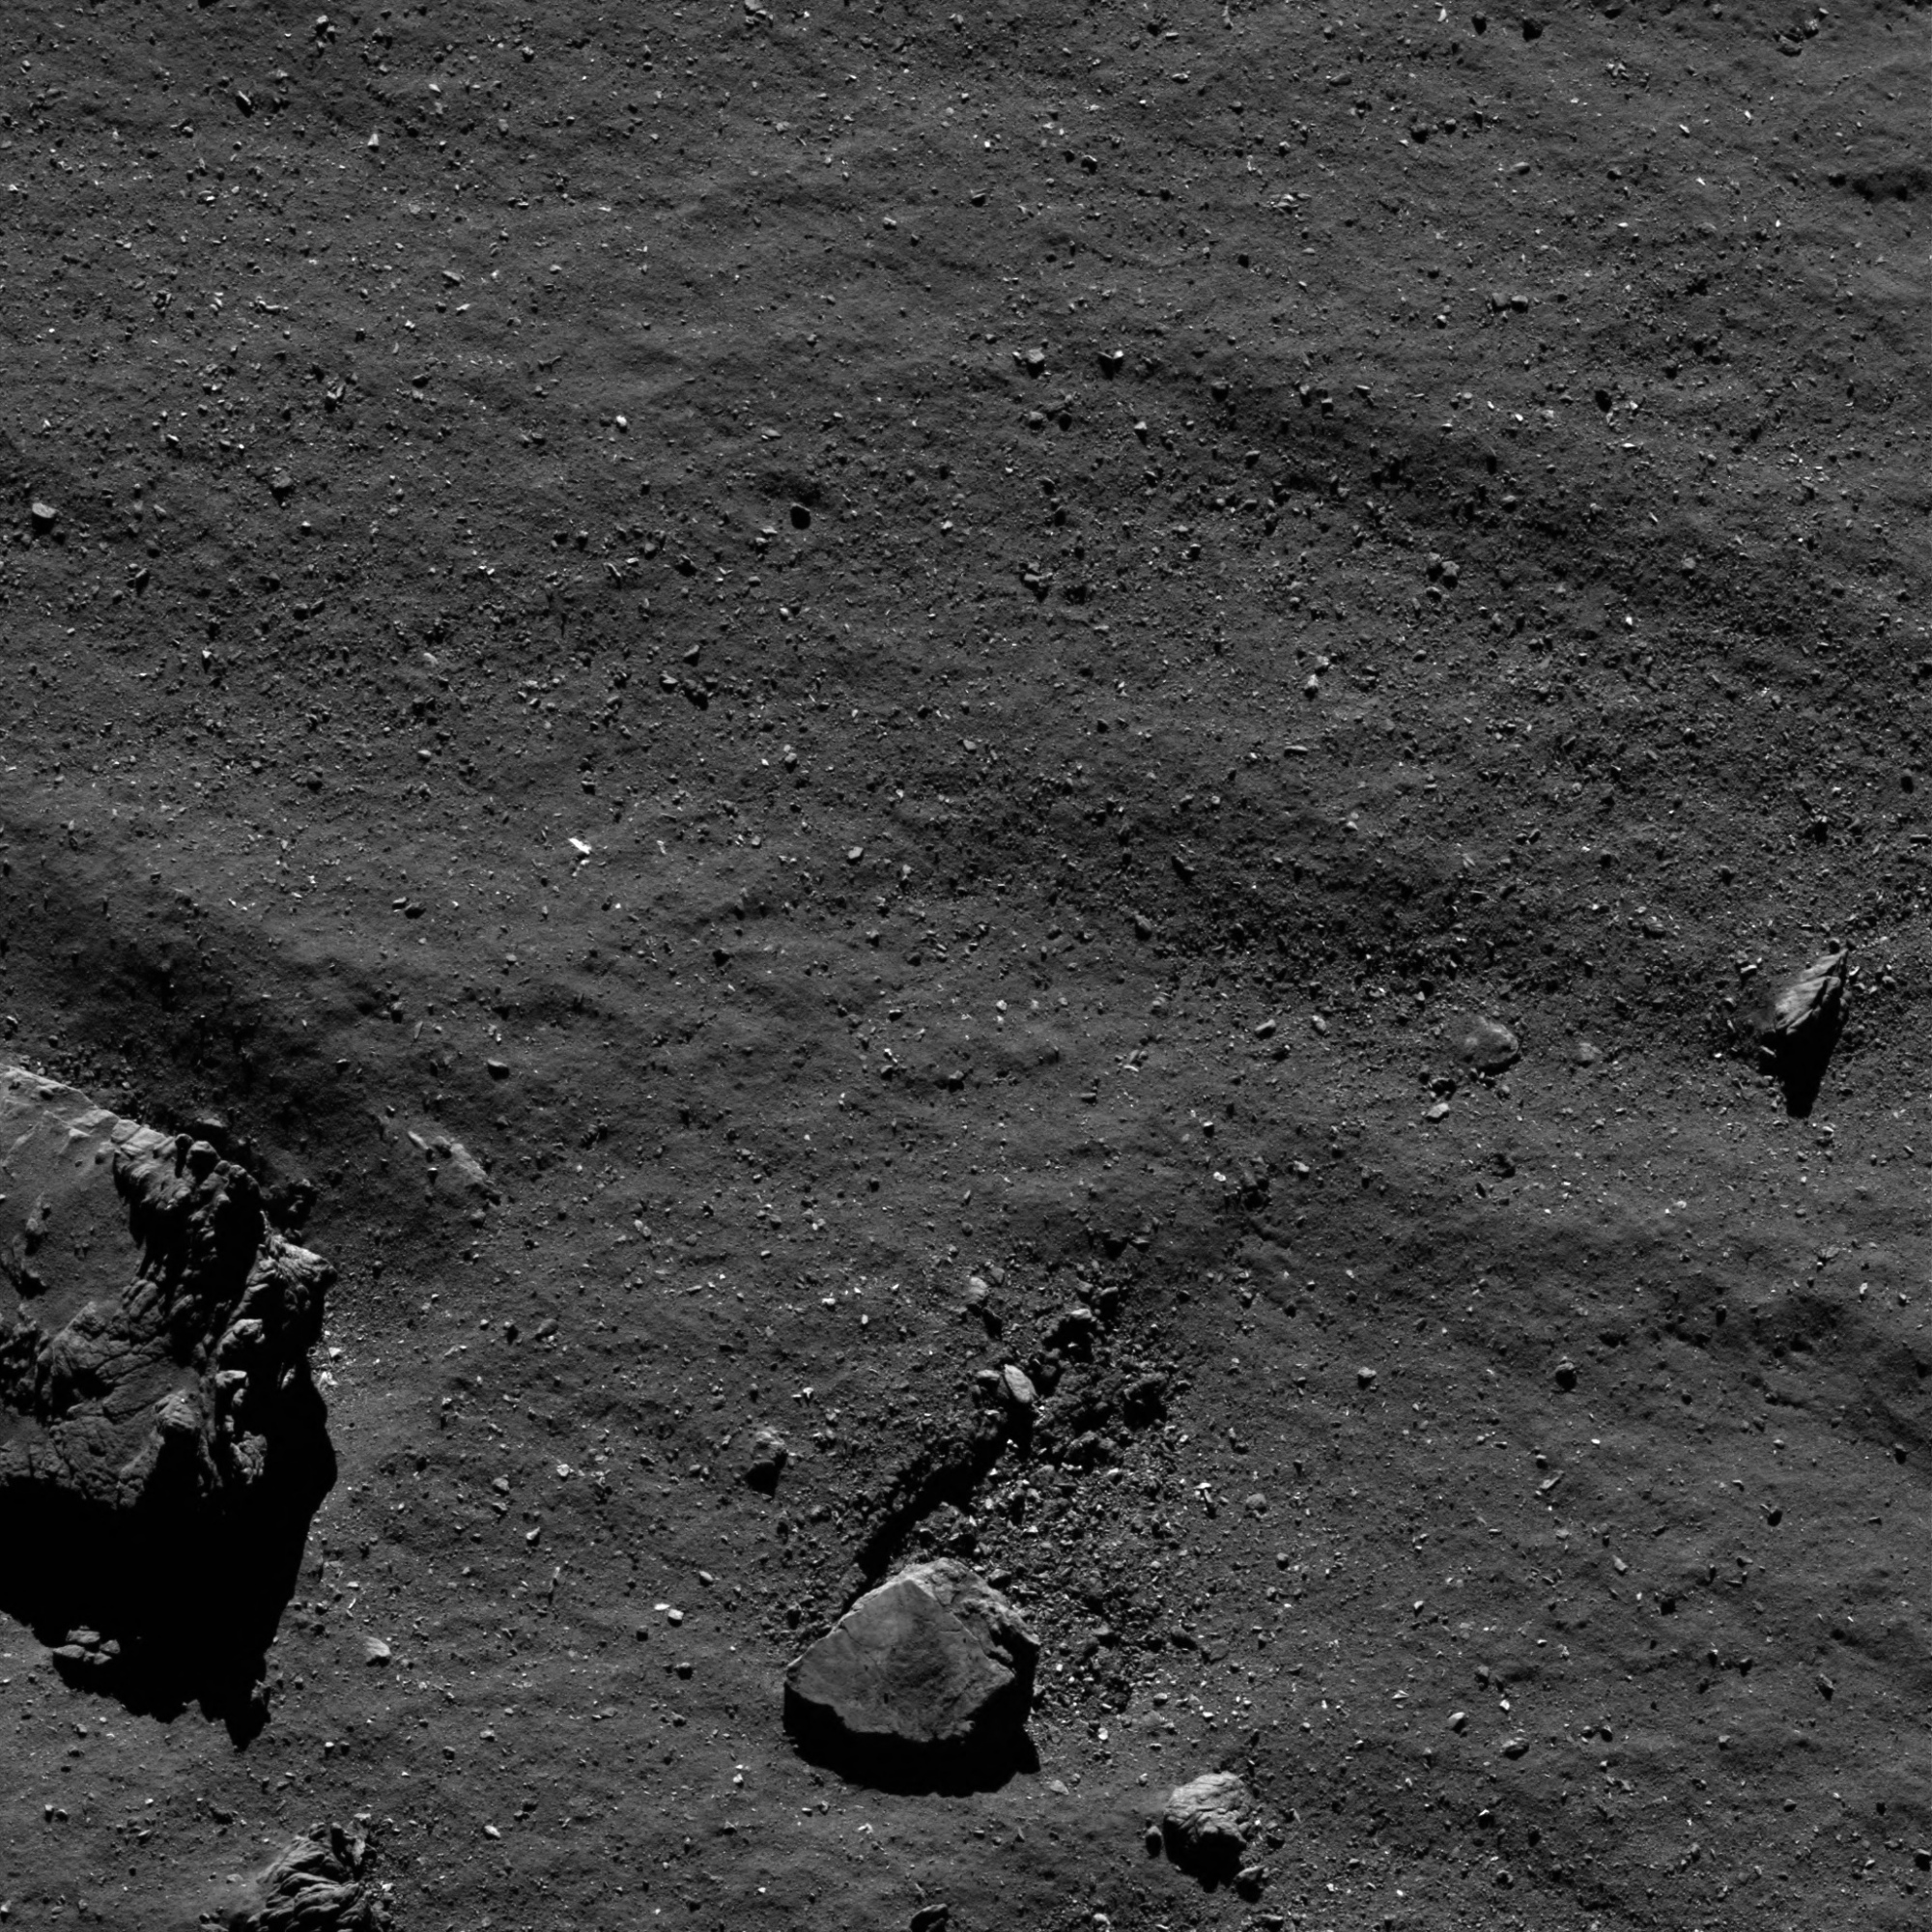 Rosetta 4 17 September 1.9 km - JPEG.jpg